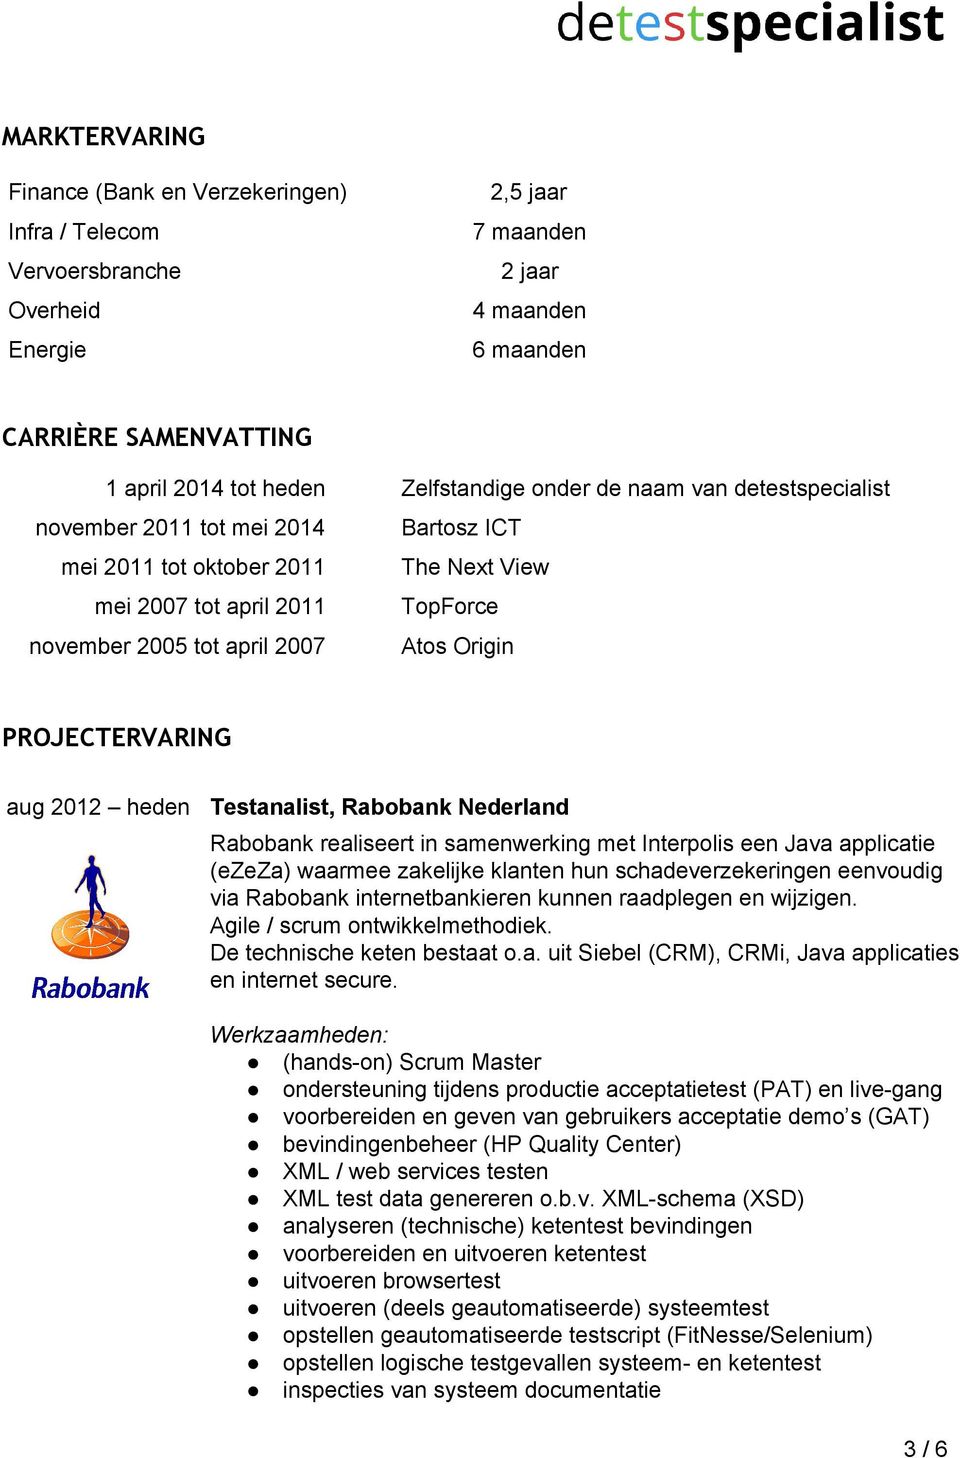 PROJECTERVARING aug 2012 heden Testanalist, Rabobank Nederland Rabobank realiseert in samenwerking met Interpolis een Java applicatie (ezeza) waarmee zakelijke klanten hun schadeverzekeringen